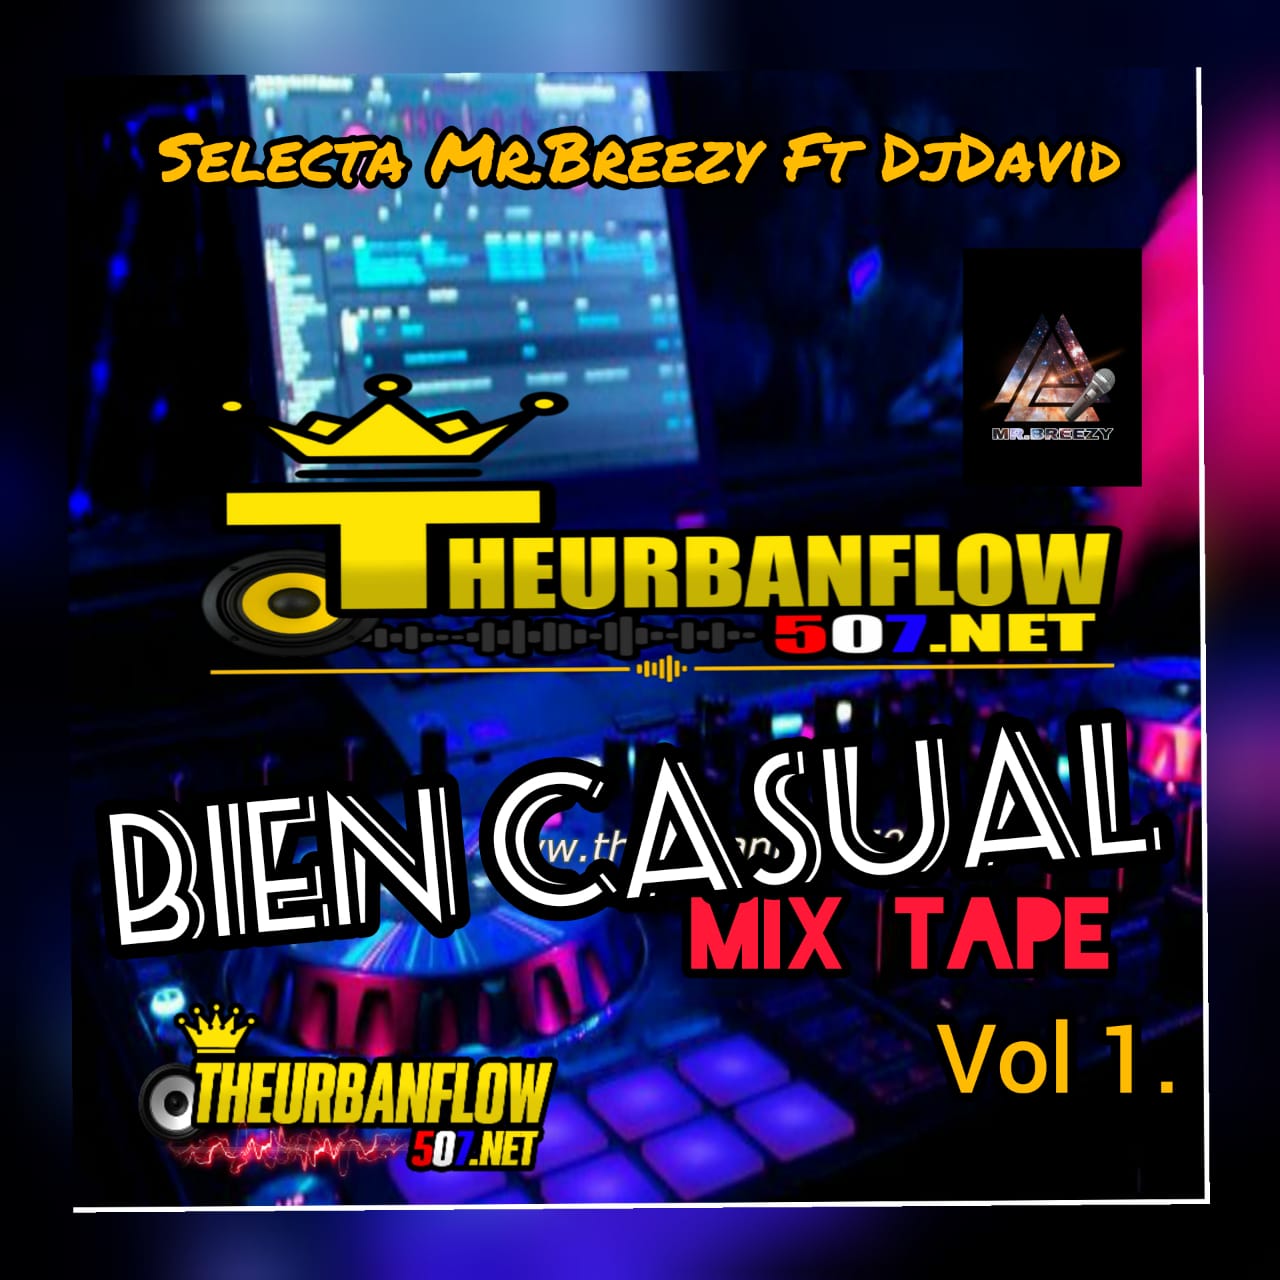 Bien Casual MixTape Vol1. Selecta Mr.Breezy Ft DjDavid